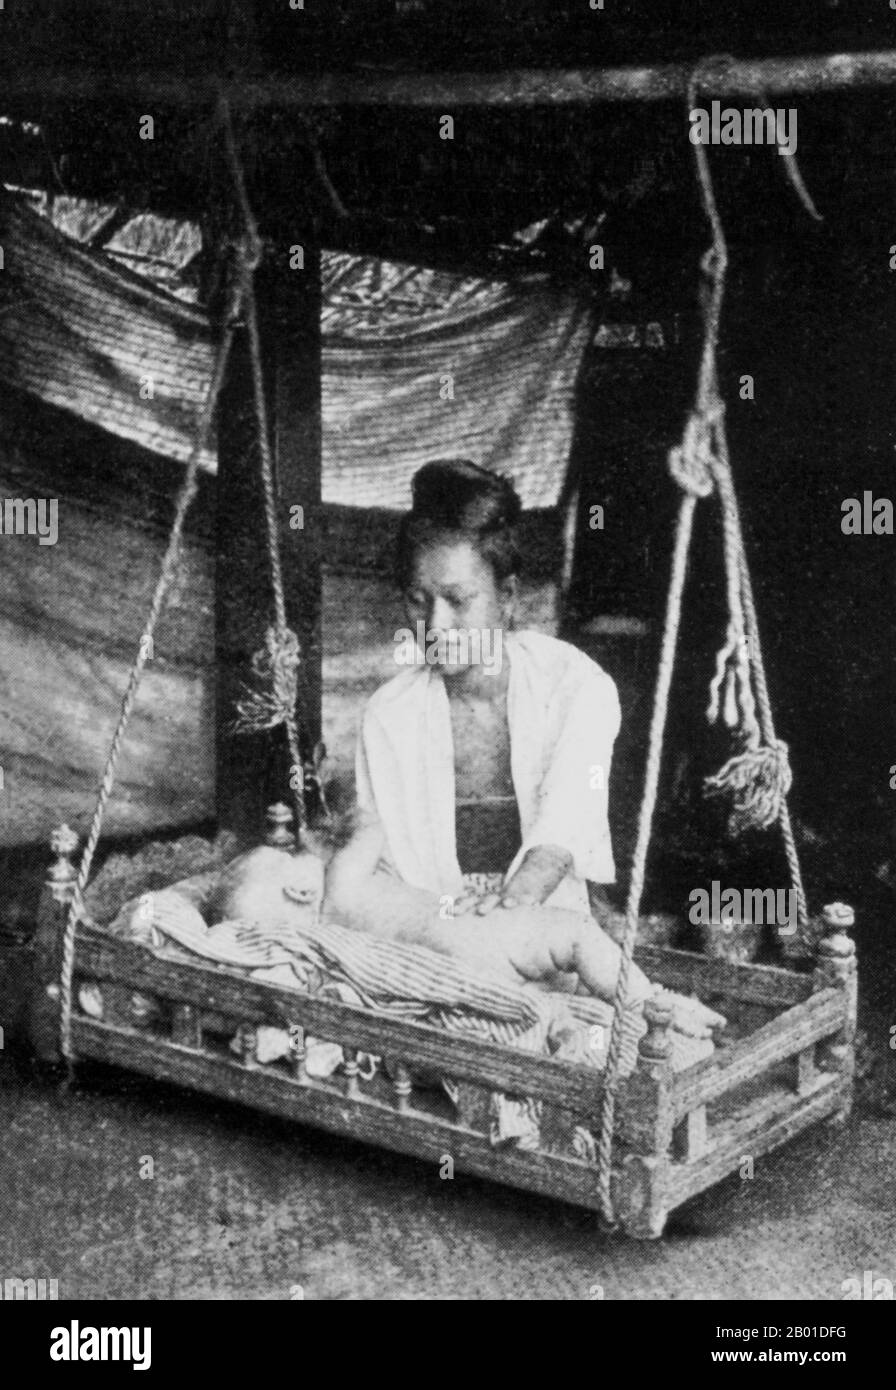 Birmanie: Une mère birmane s'occupe de son enfant qui se trouve dans un berceau en bois balançoire (birman: 'Sunngban'), vers 1892-1896. La conquête britannique de la Birmanie a commencé en 1824 en réponse à une tentative birmane d'envahir l'Inde. En 1886, et après deux autres guerres, la Grande-Bretagne avait incorporé tout le pays dans le Raj britannique. Pour stimuler le commerce et faciliter les changements, les Britanniques ont fait venir des Indiens et des Chinois, qui ont rapidement déplacé les Birmans dans les zones urbaines. À ce jour, Rangoon et Mandalay ont de grandes populations indiennes ethniques. Des chemins de fer et des écoles ont été construits, ainsi qu'un grand nombre de prisons. Banque D'Images